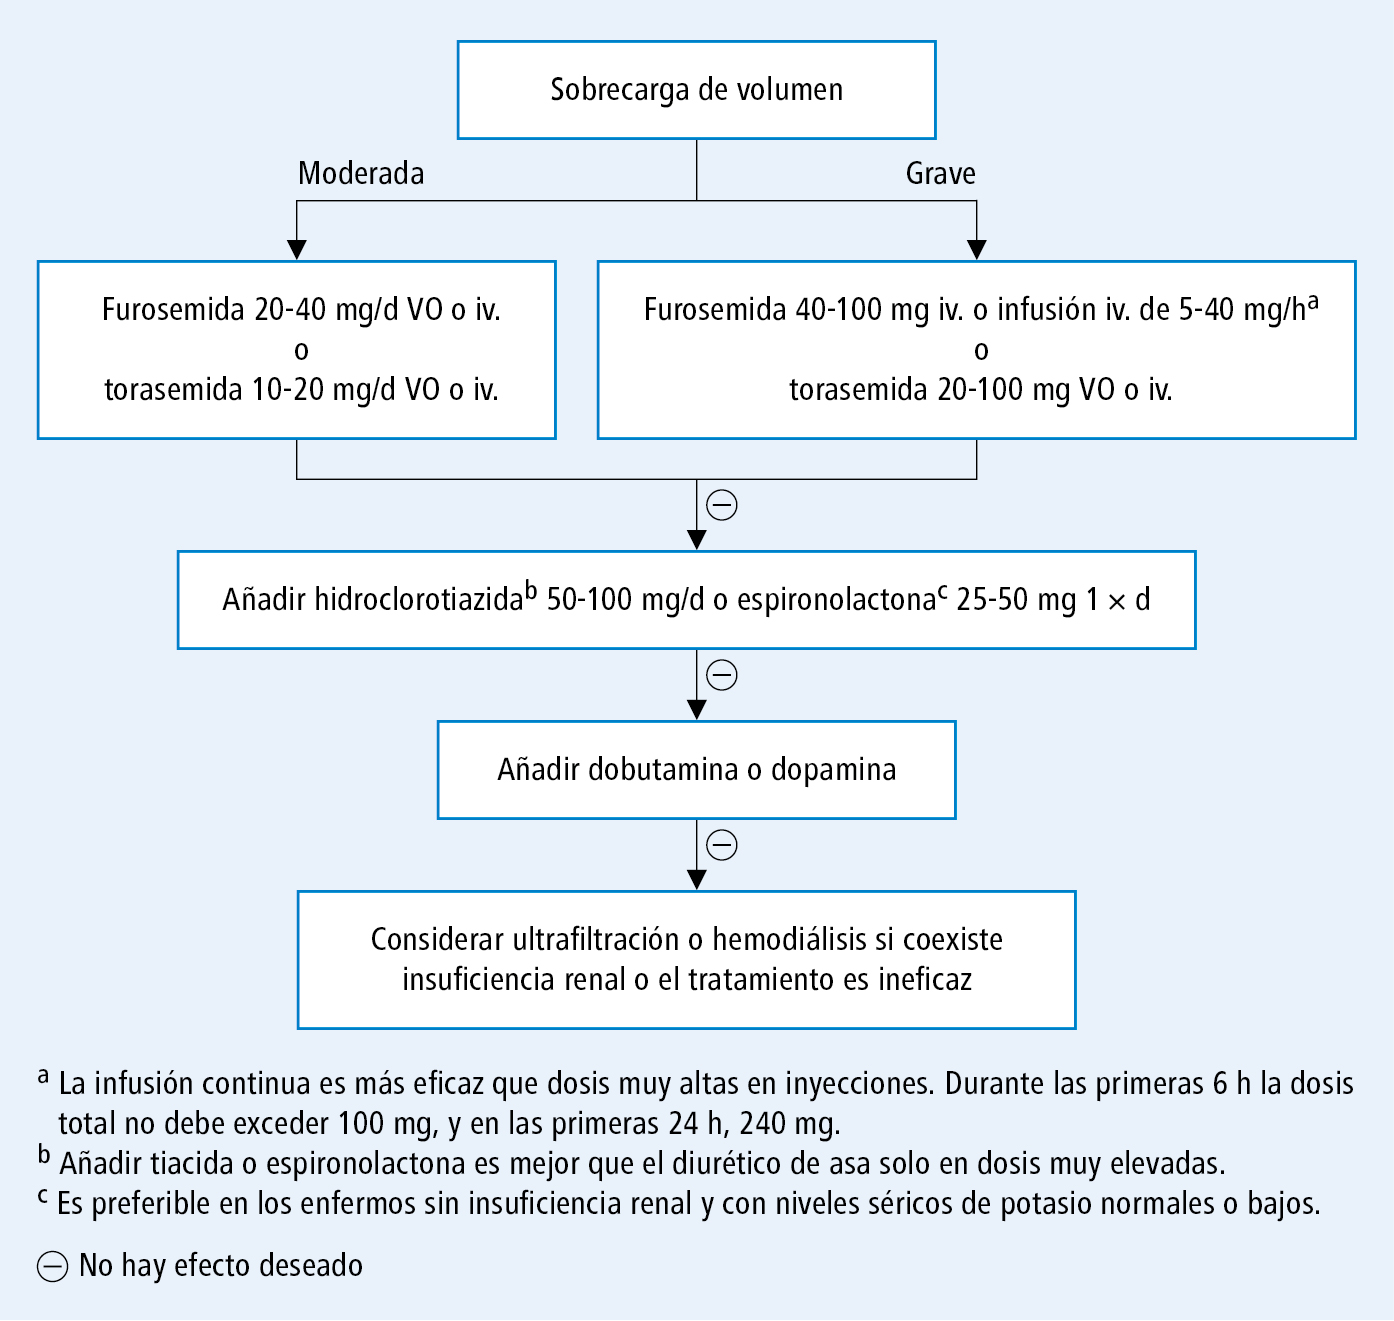  Algoritmo del tratamiento diurético en los enfermos con ICA (según las guías de la ESC 2008, modificado) 